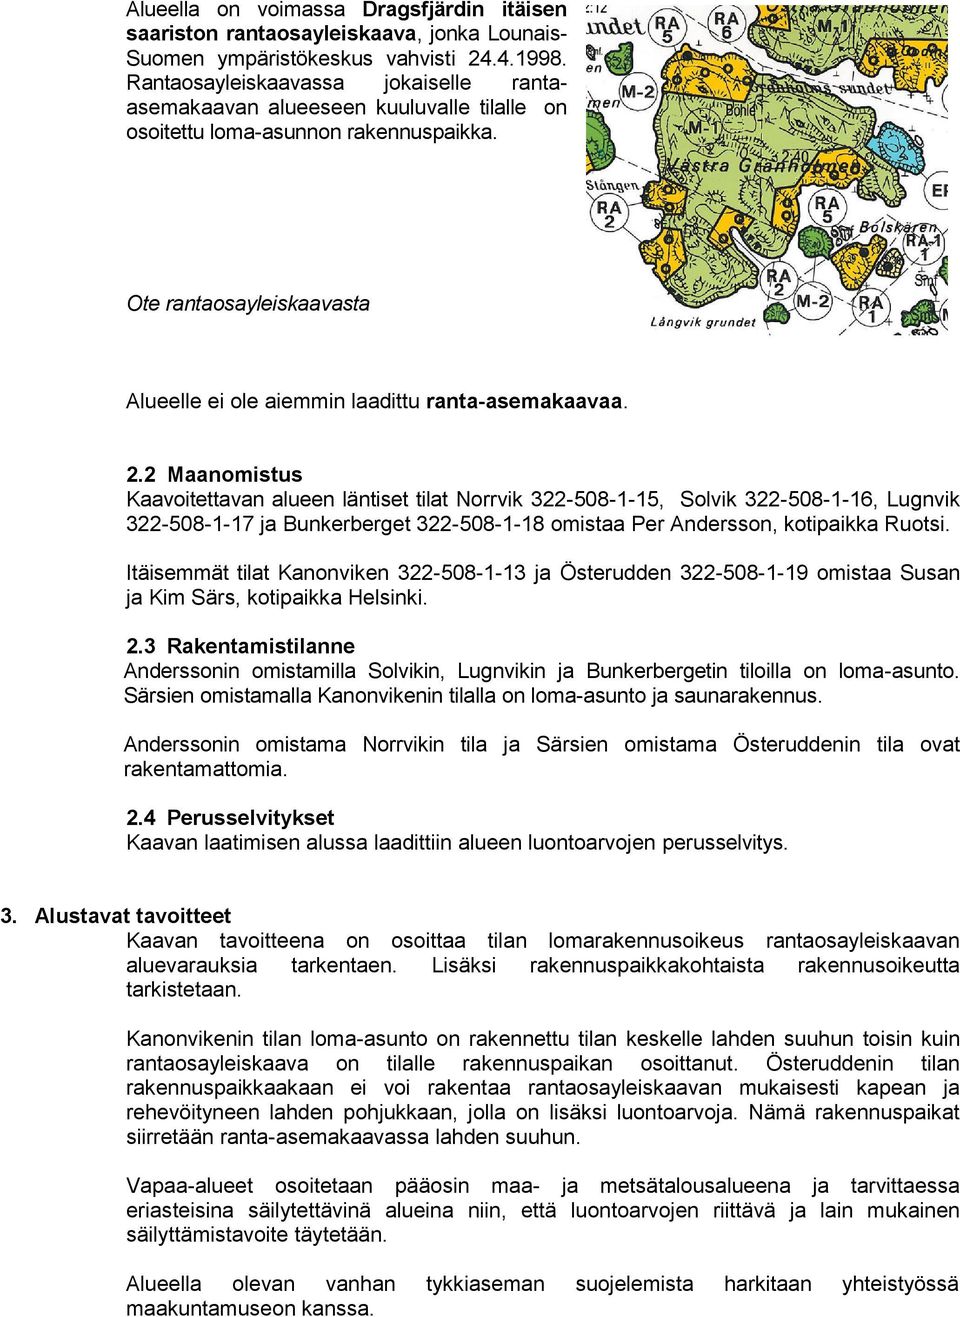 2.2 Maanomistus Kaavoitettavan alueen läntiset tilat Norrvik 322-508-1-15, Solvik 322-508-1-16, Lugnvik 322-508-1-17 ja Bunkerberget 322-508-1-18 omistaa Per Andersson, kotipaikka Ruotsi.